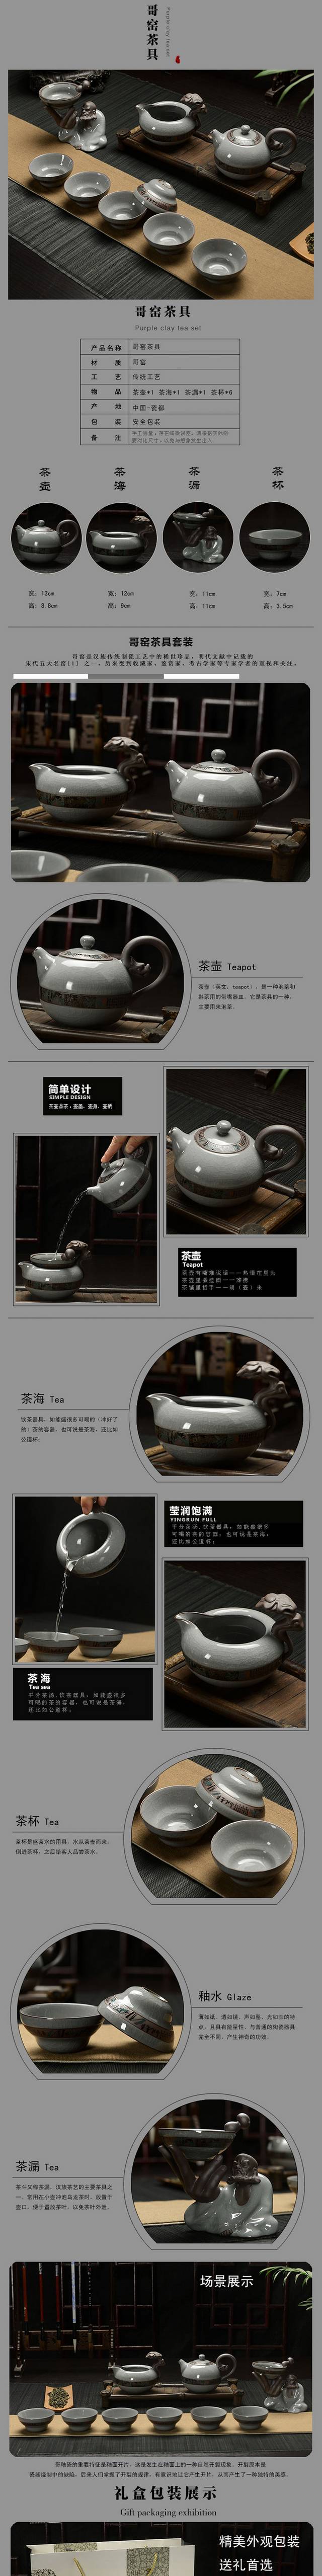 大气淘宝茶具详情页